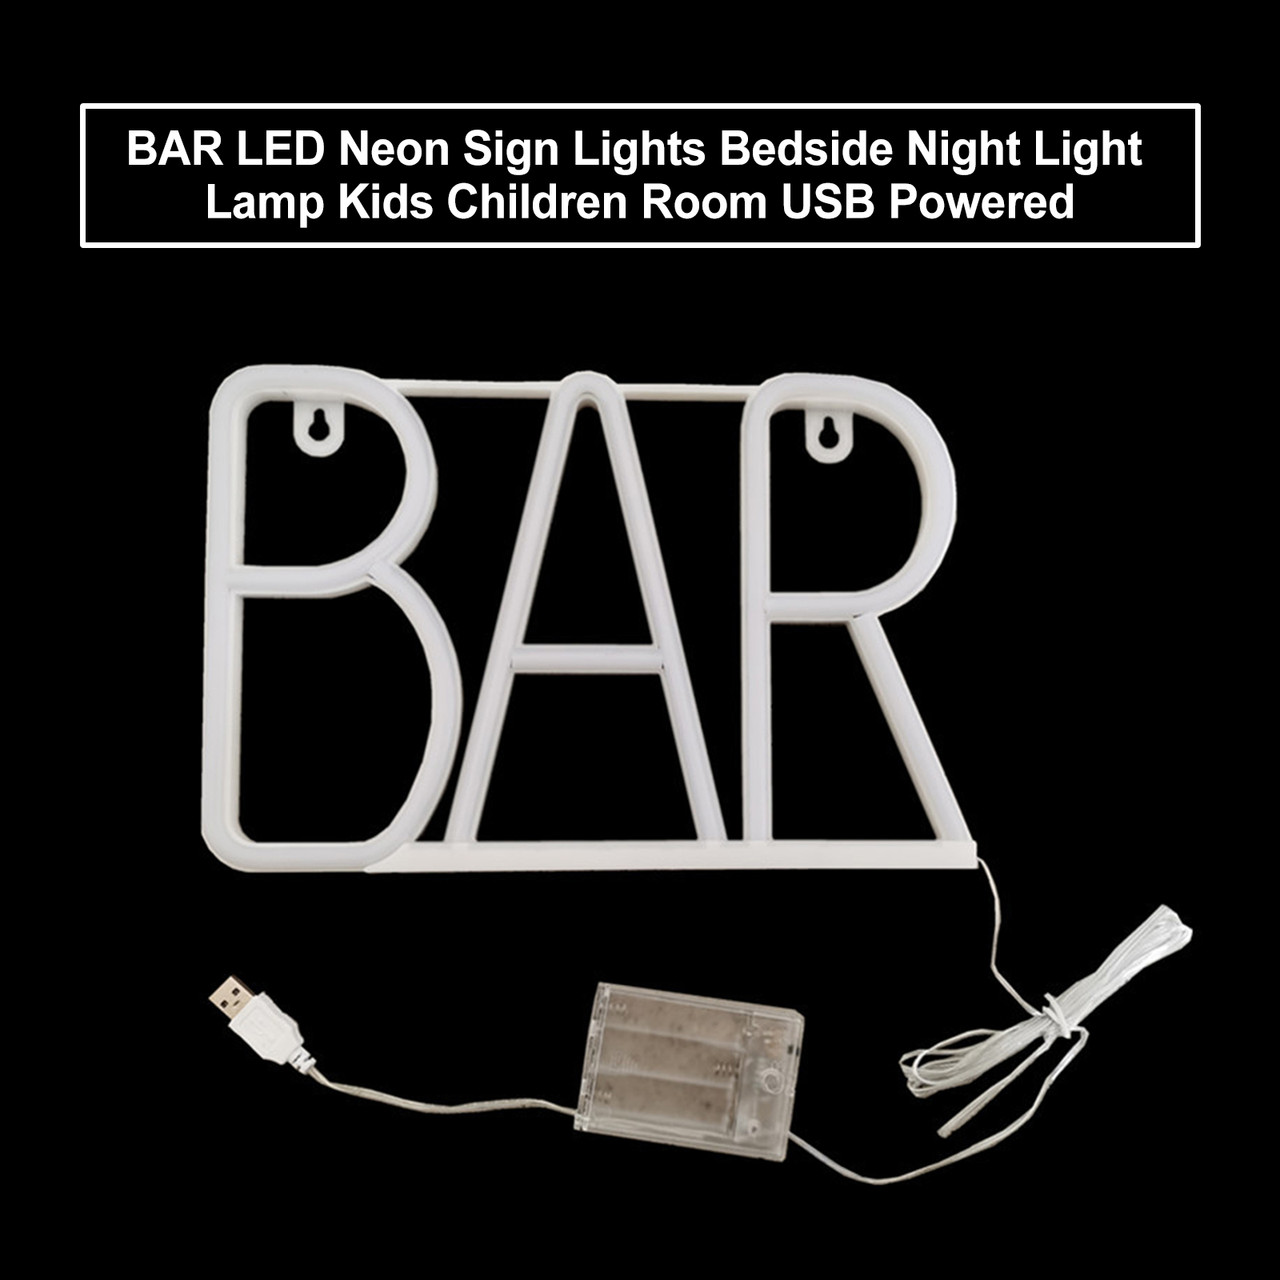 BAR LED Neon Sign Lights Bedside Night Light Lamp Kids Children Room USB Powered Pink